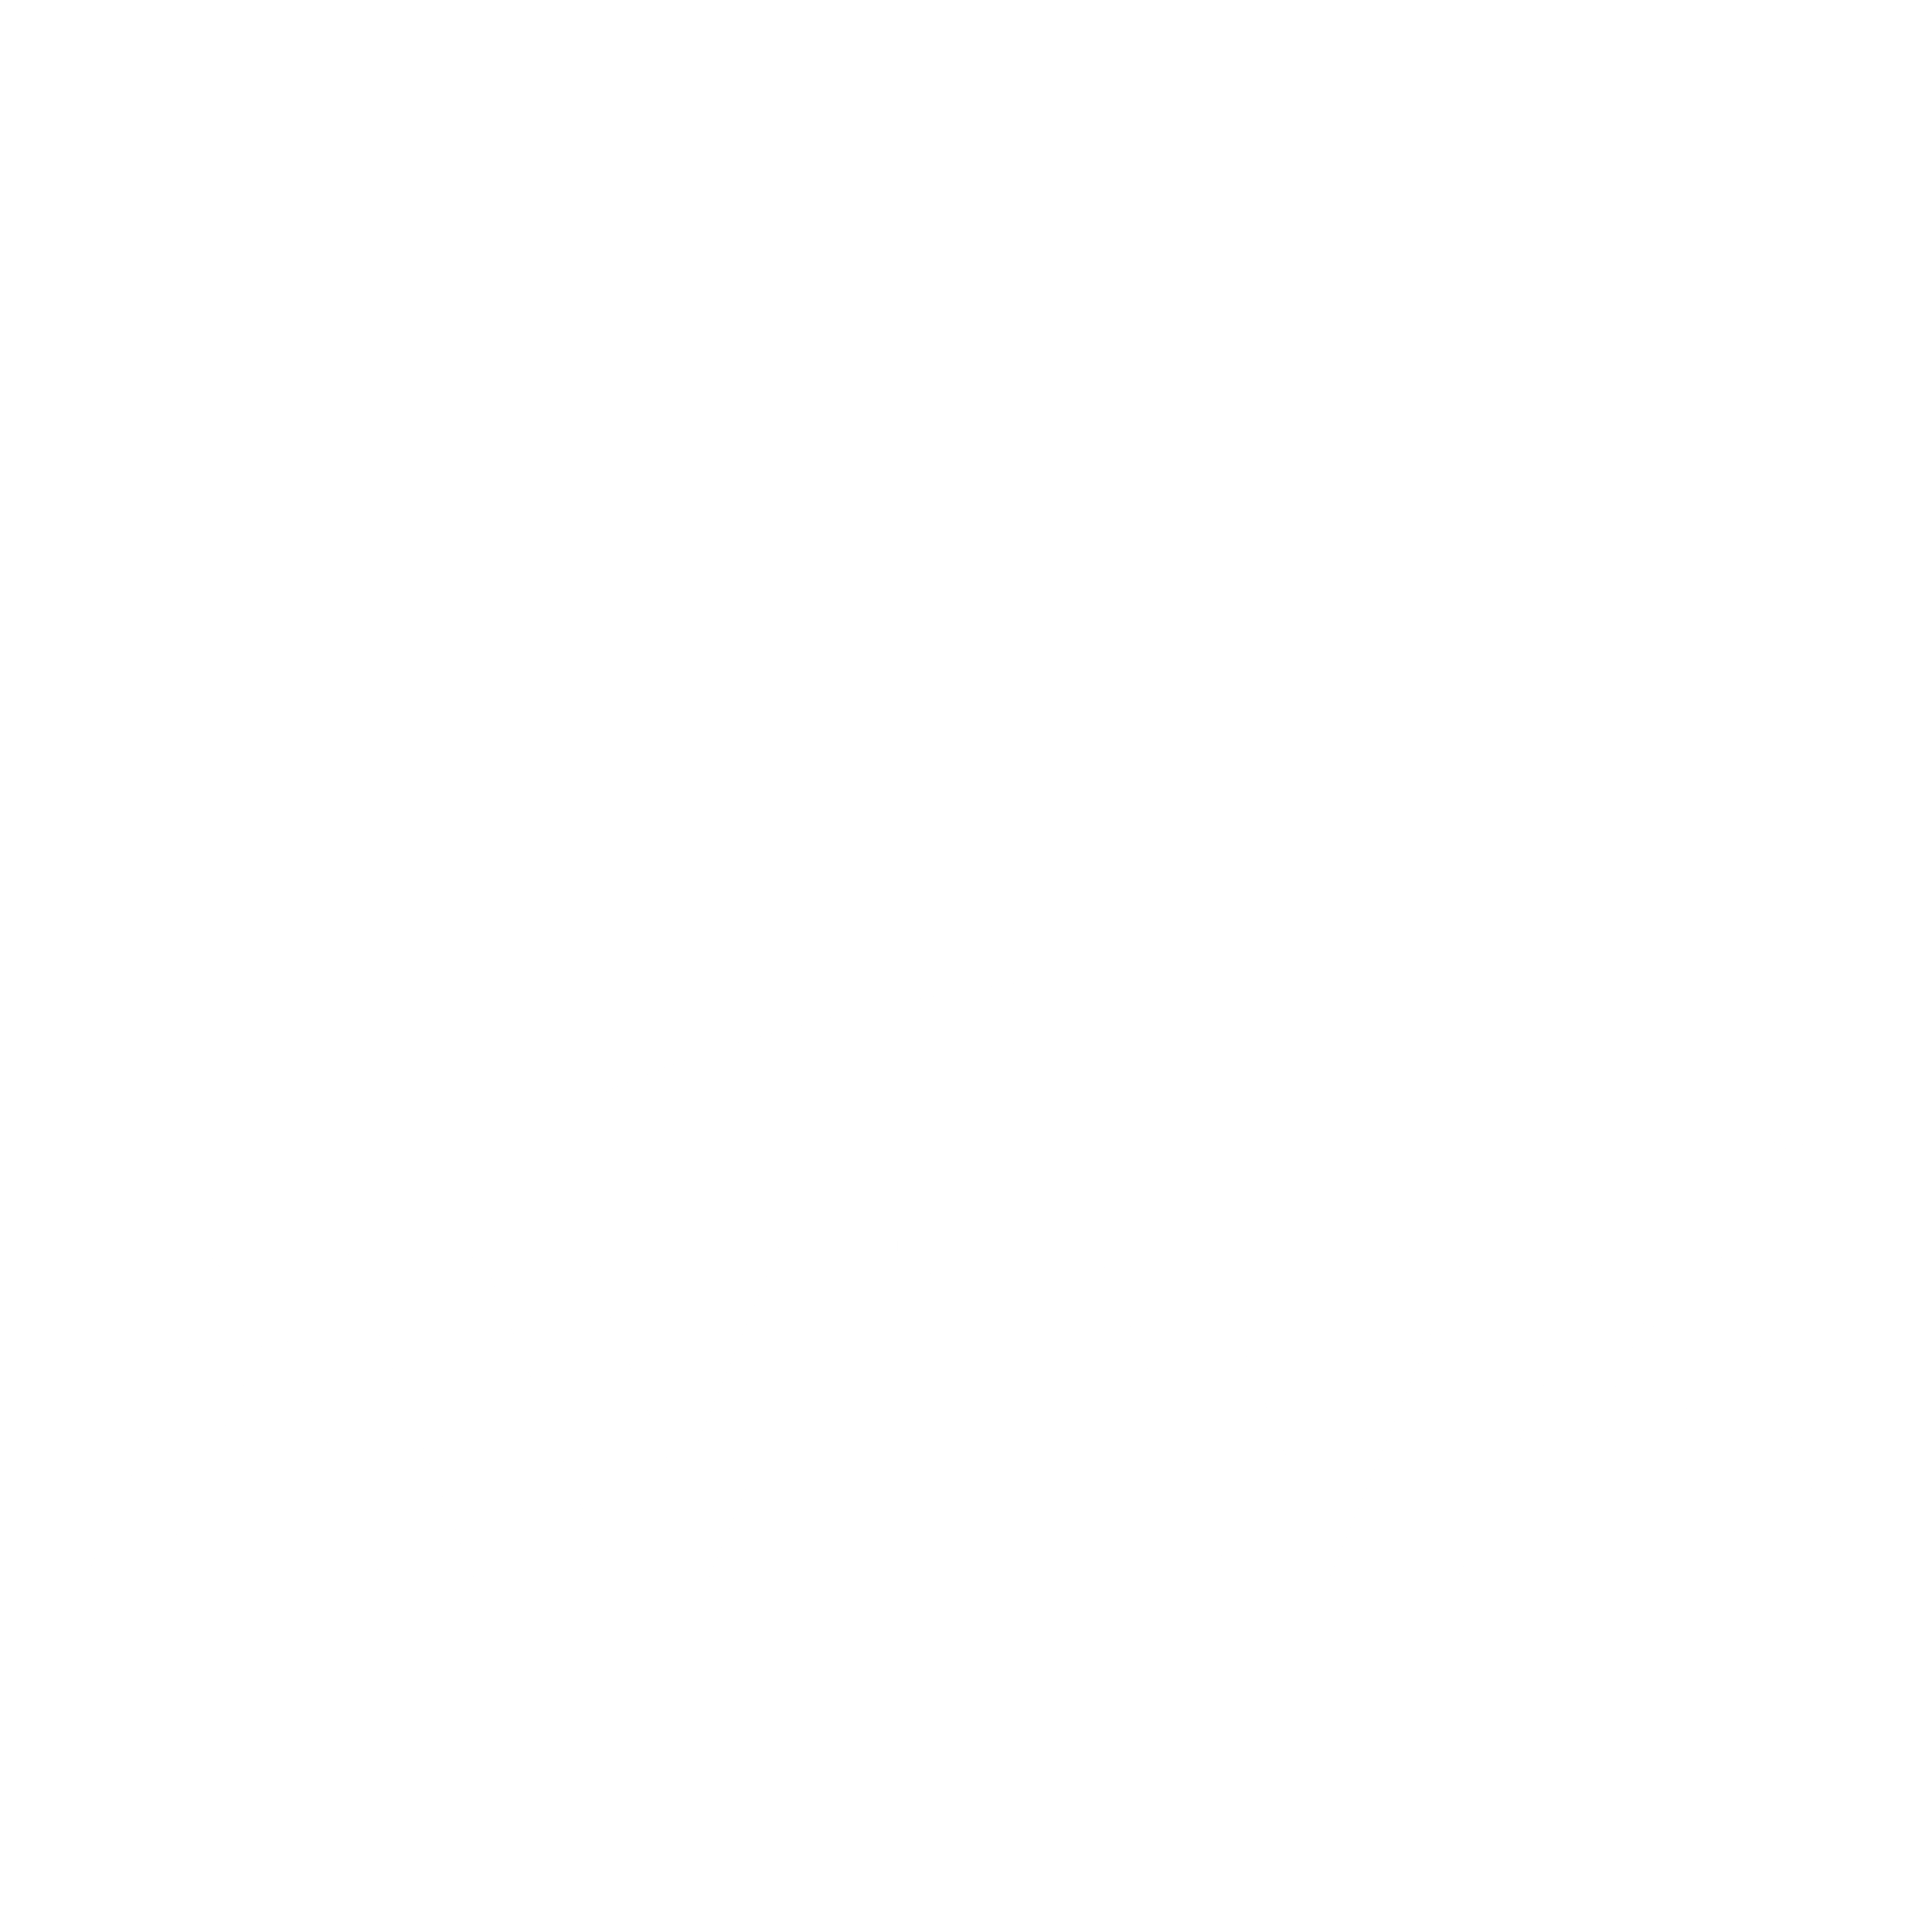 aviva-logo-black-and-white.png